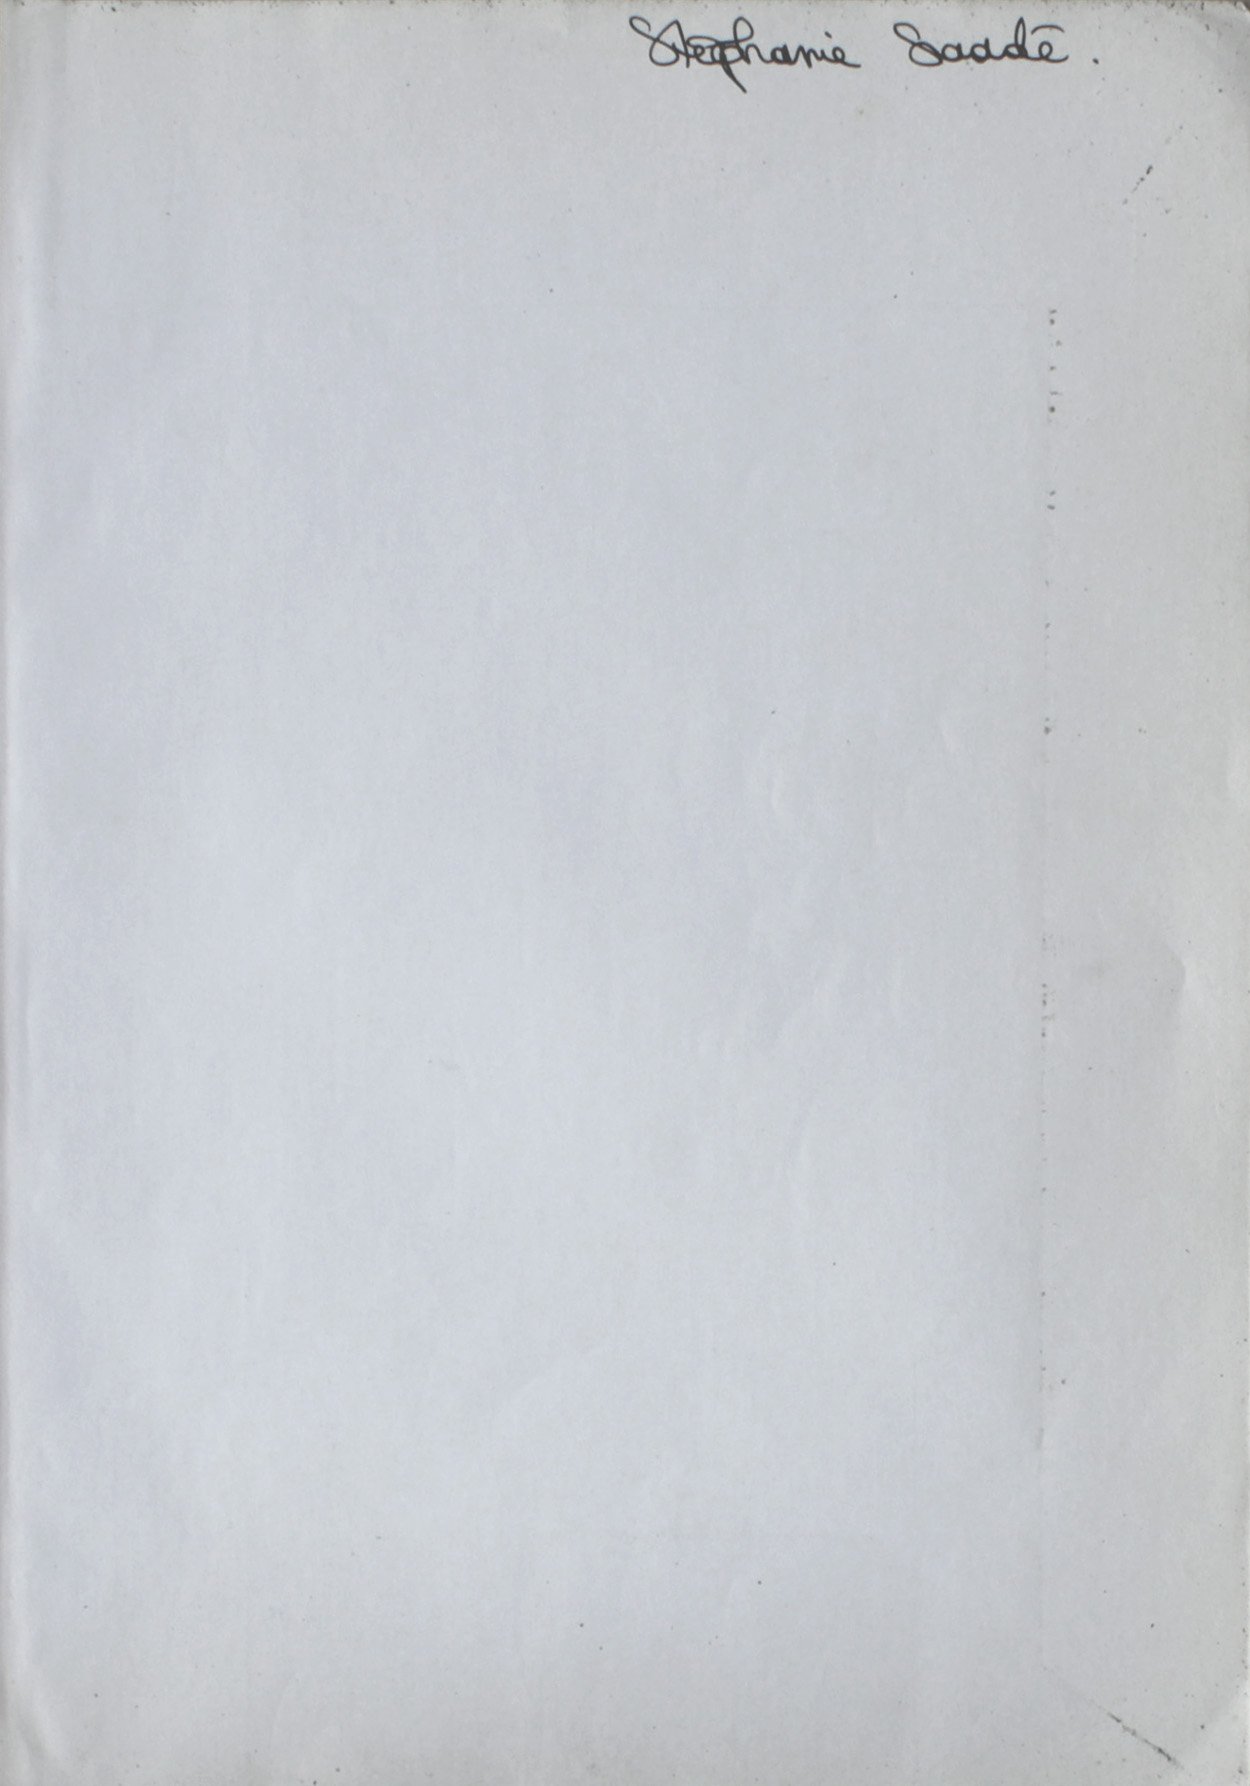  Stéphanie Saadé, 2022, book page, pen, 25 x 17.5cm / 31.5 x 23 cm each (framed), unique variation  Philosophie, Terminale ES, Laurence Hansen-Løve, 1999, Paris, éditions Hatier 